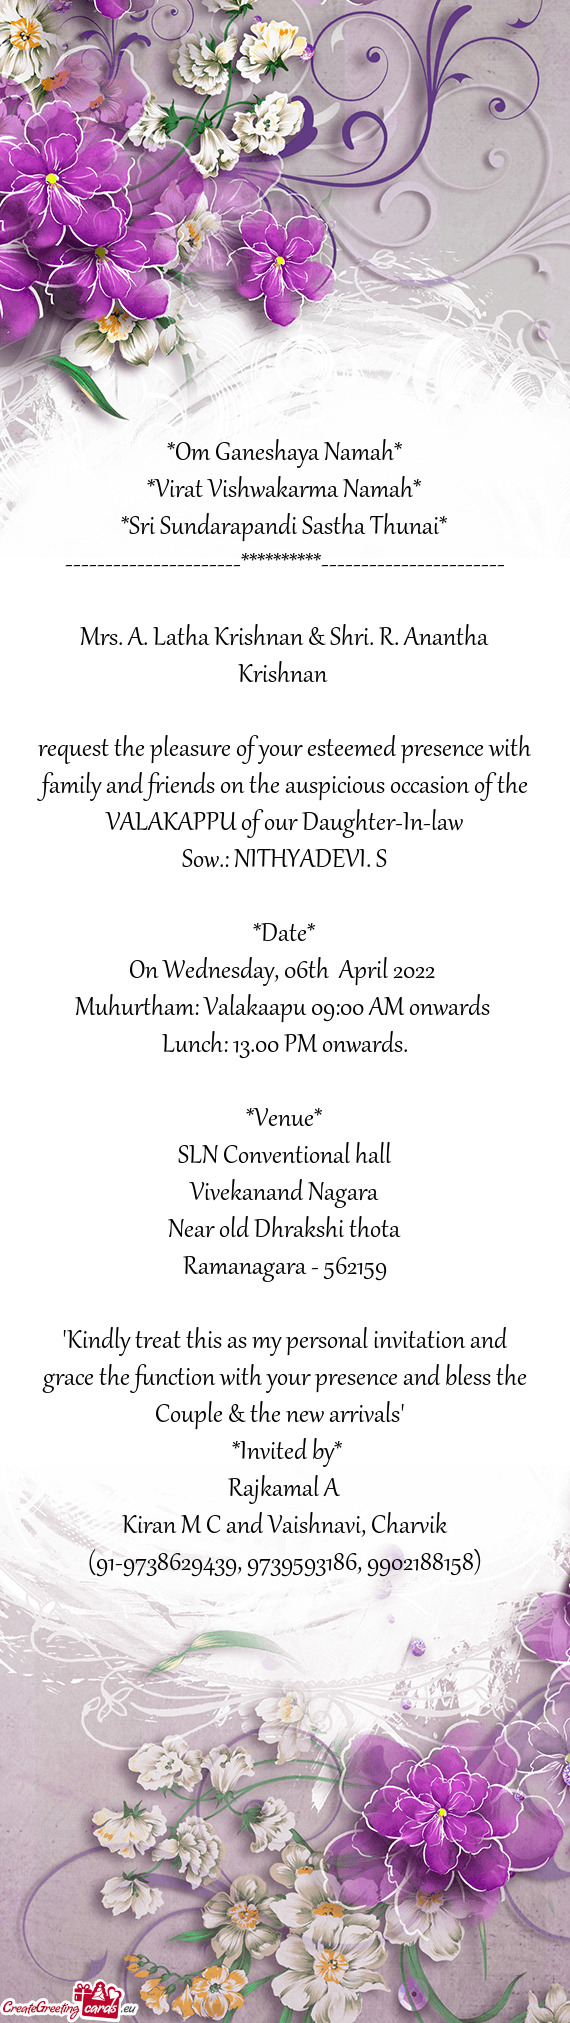 Virat Vishwakarma Namah